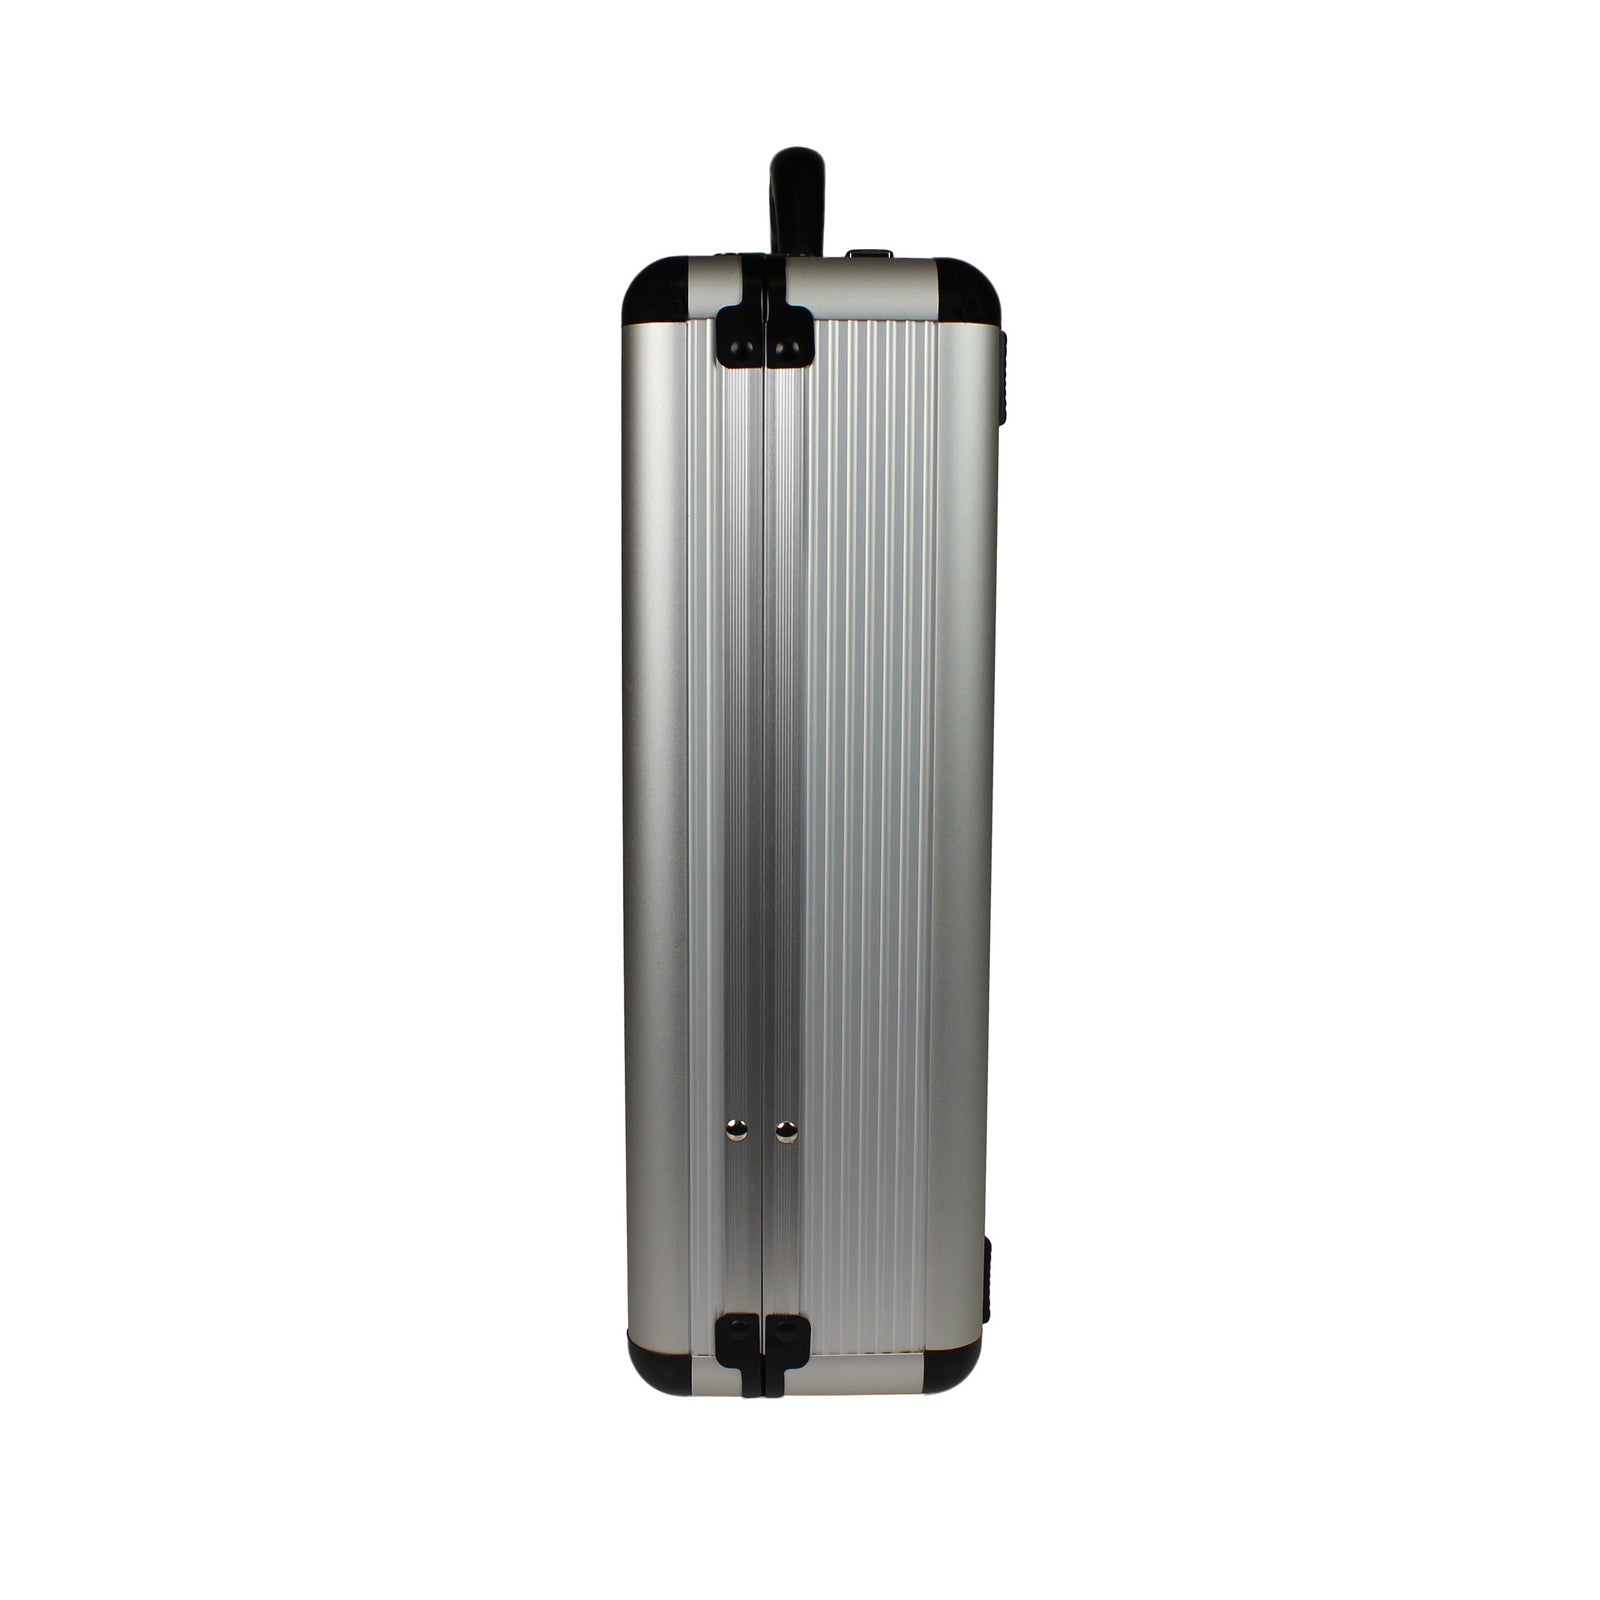 World Traveler Fasano Aluminum Silver 4-inch-wide Attache Briefcase